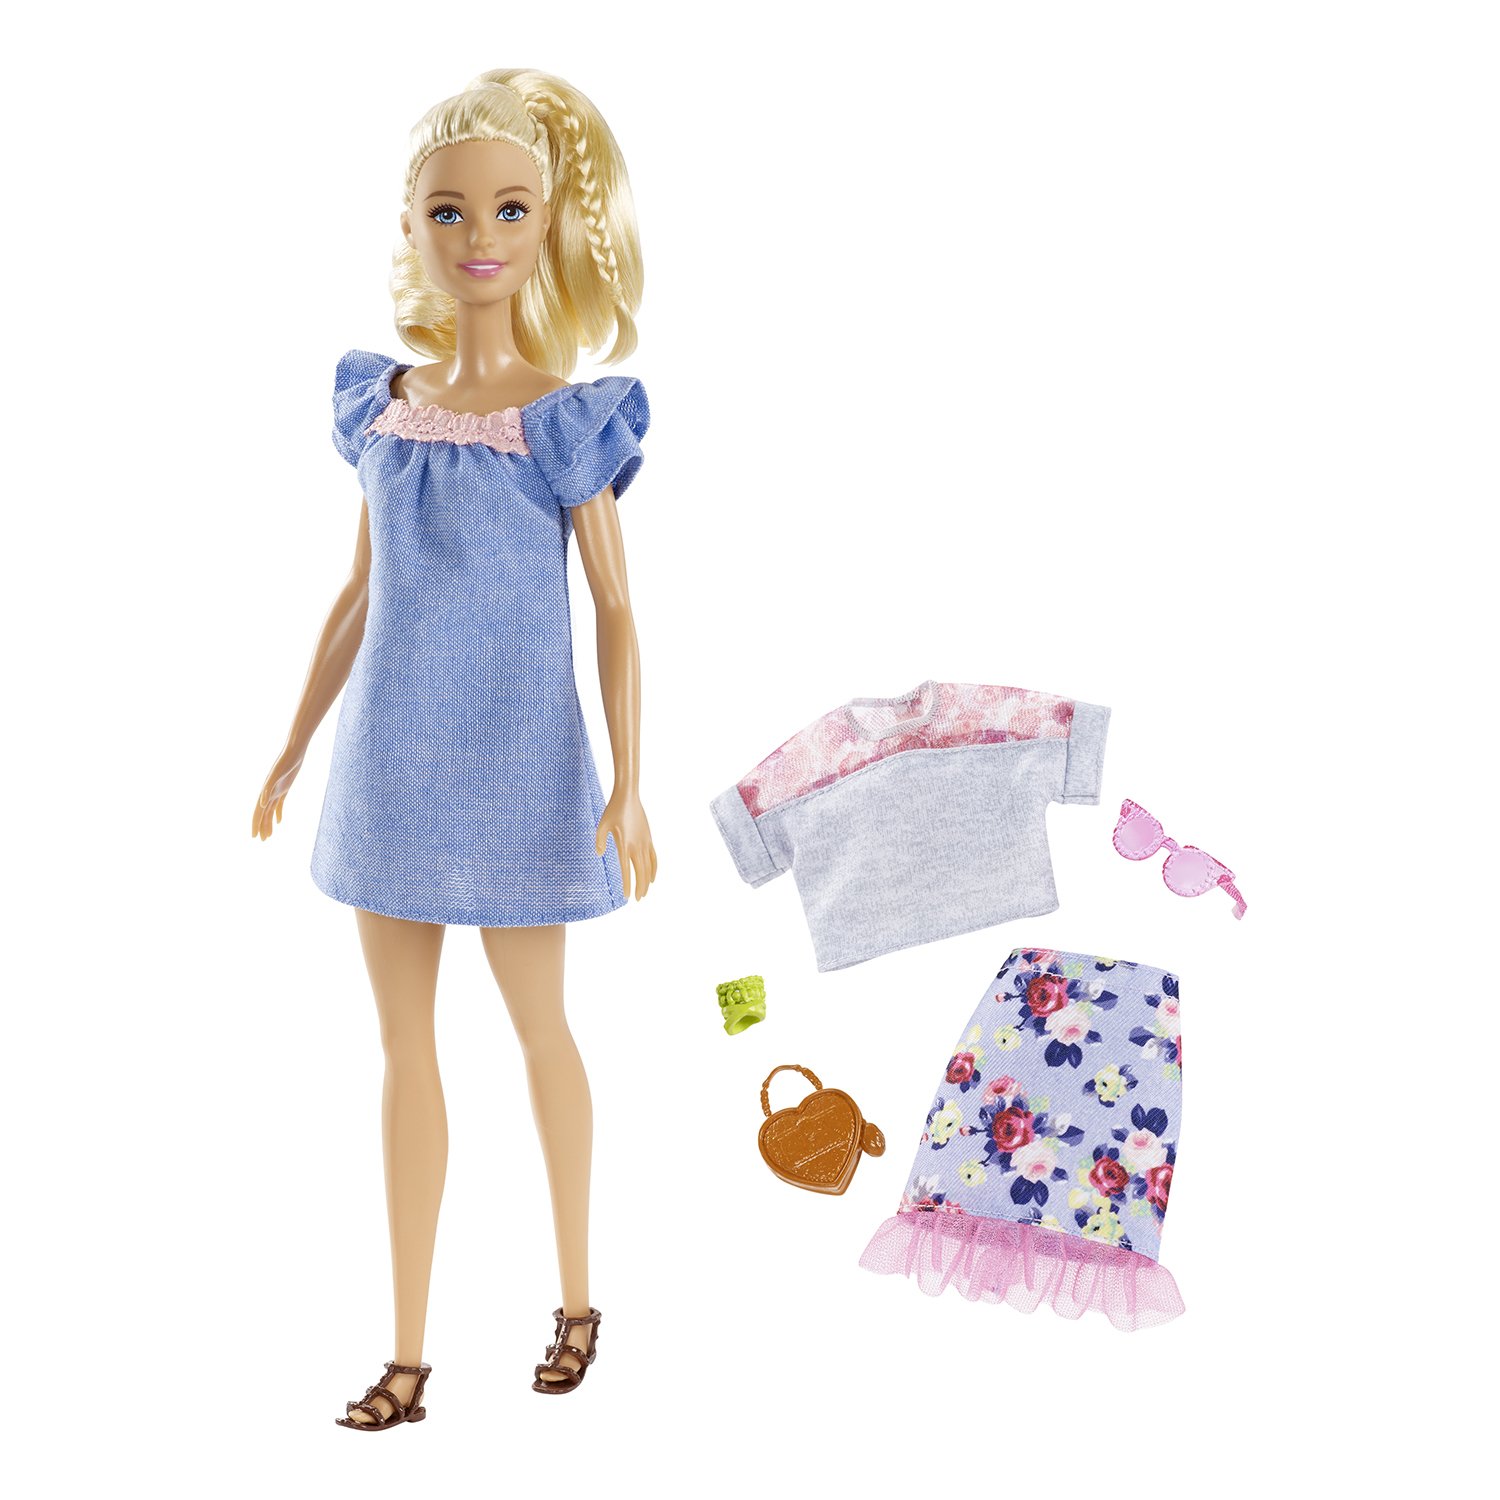 Кукла Barbie FRY79 с дополнительным комплектом одежды, 29 см